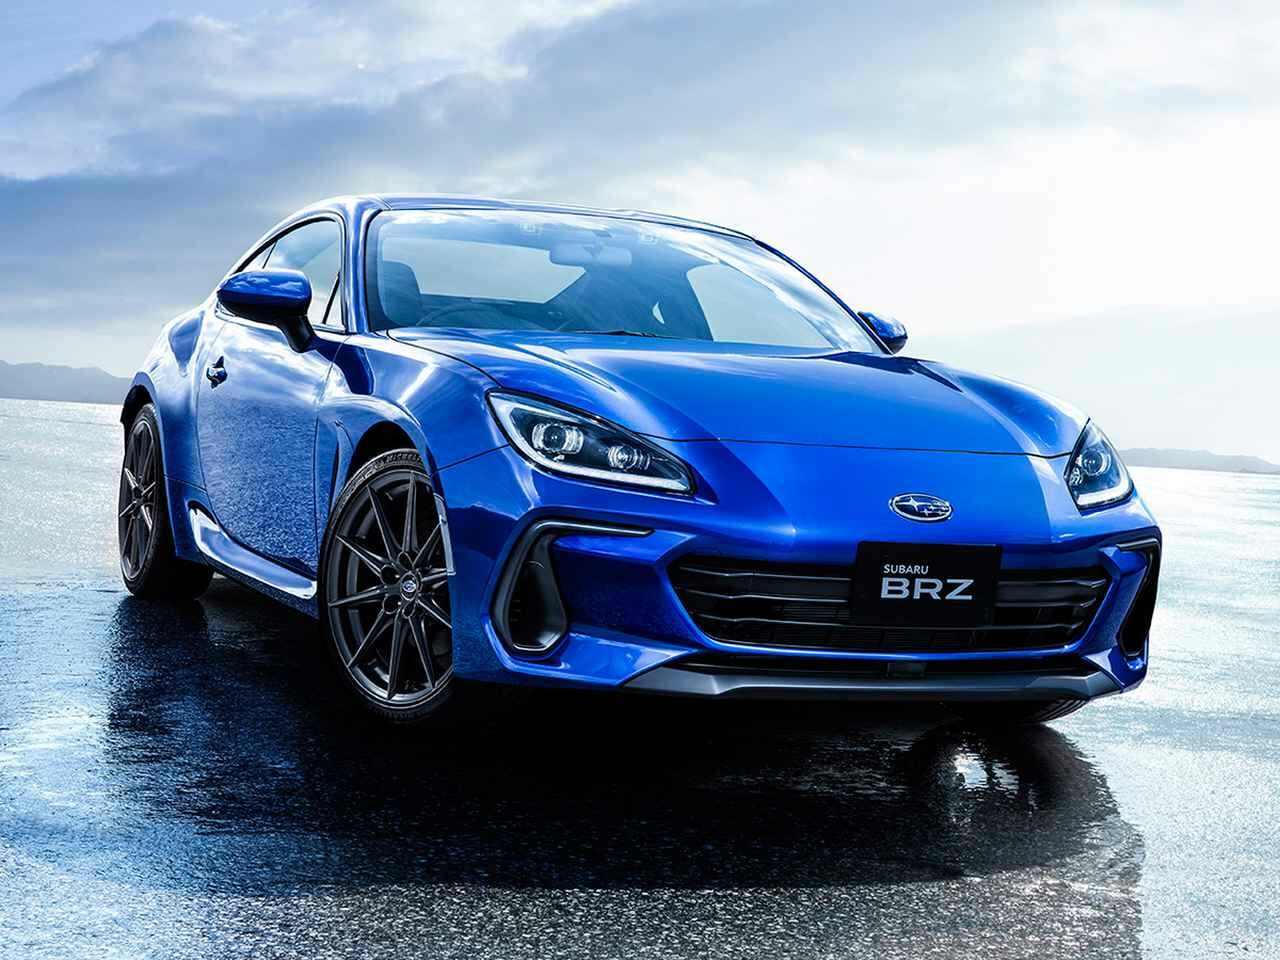 スバルが新型BRZを発表し、諸元や車両価格を正式公開。FA24型水平対向2.4Lエンジンを搭載